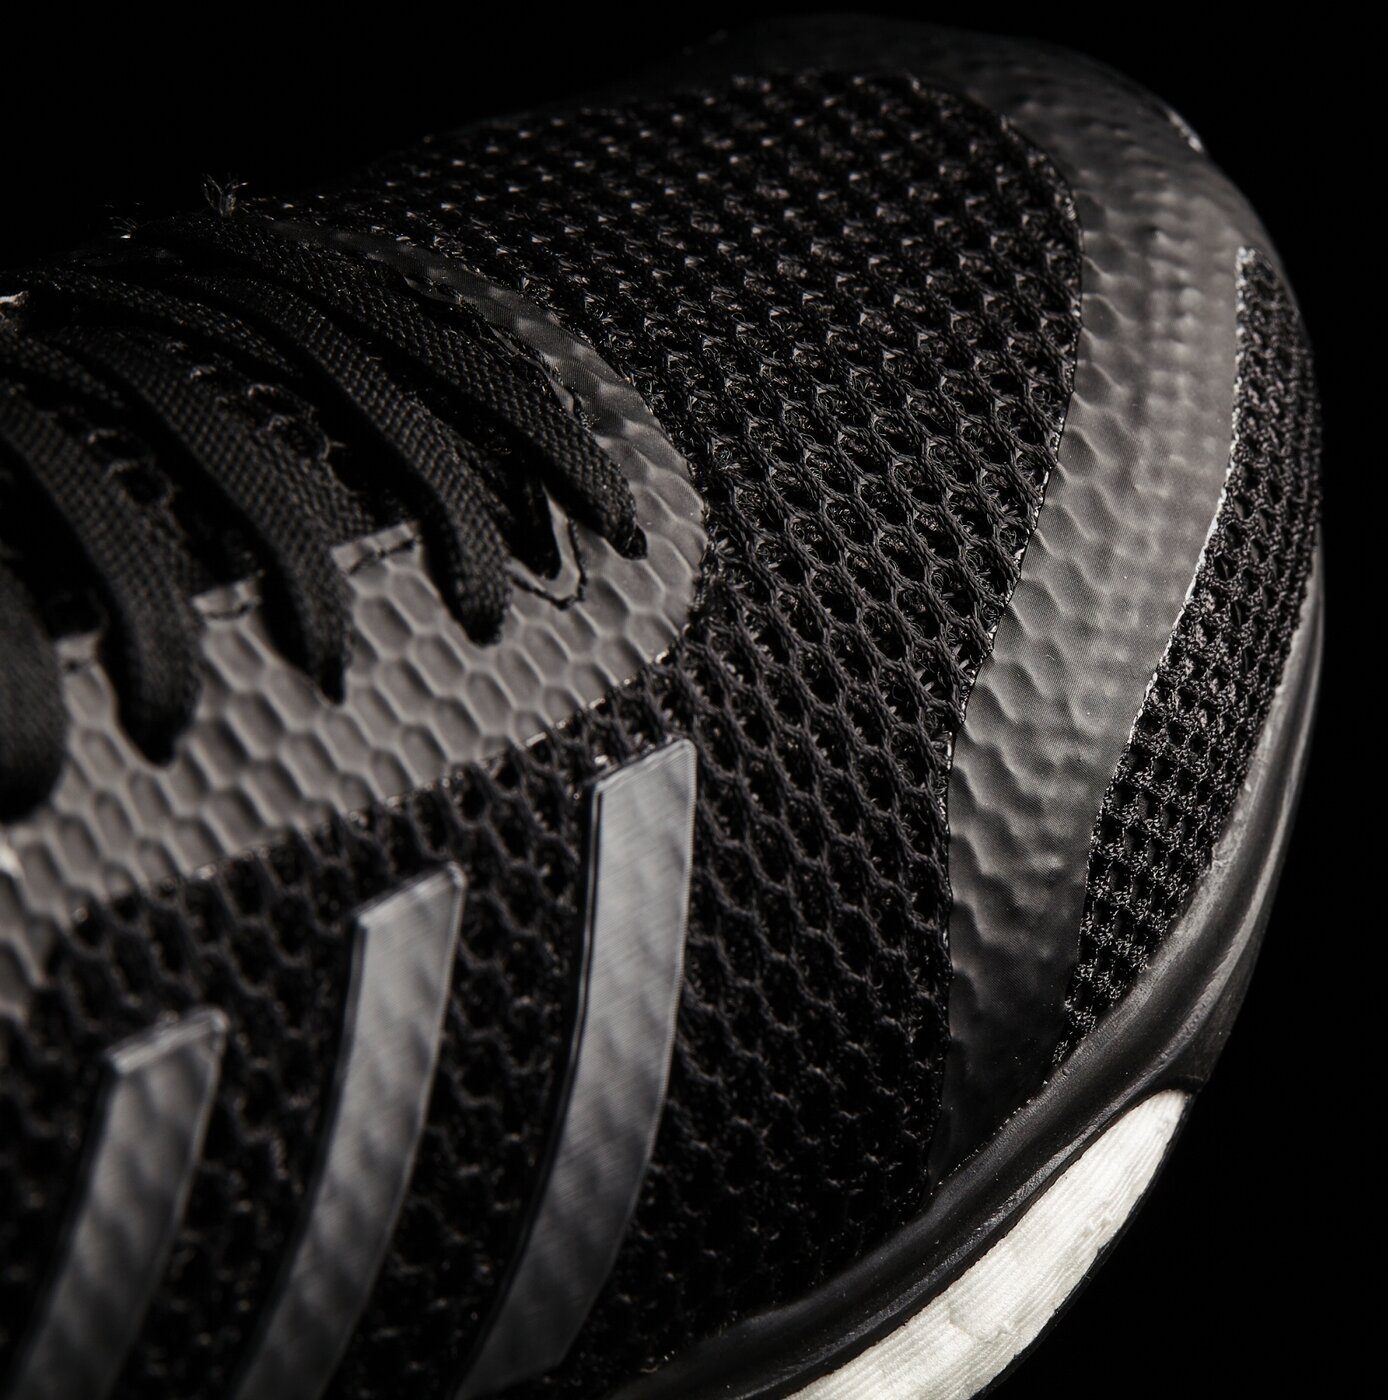 adidas Response + 00000-UK0050 Da.-Run-Schuh Sportswear Laufschuh